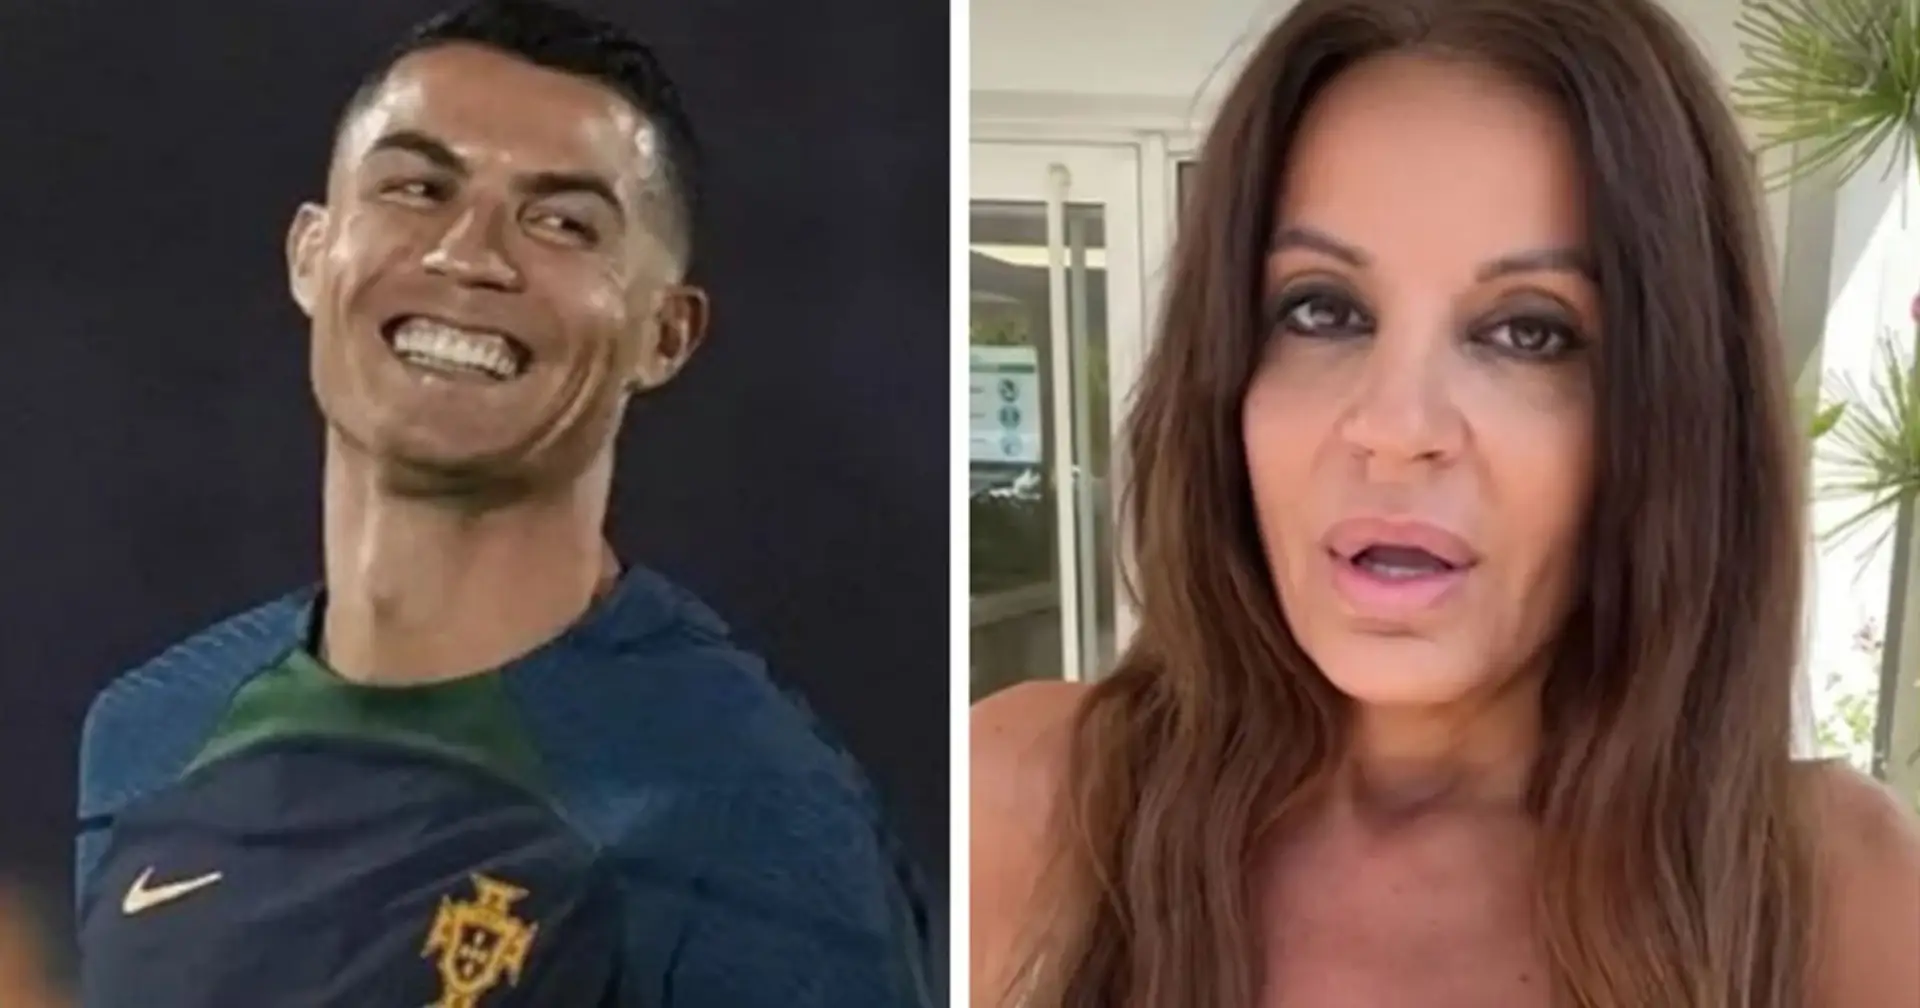 "Er raubte mir viele Nächte des Schlafes": Die 50-jährige Schauspielerin hat zugegeben, eine Affäre mit Cristiano Ronaldo gehabt zu haben